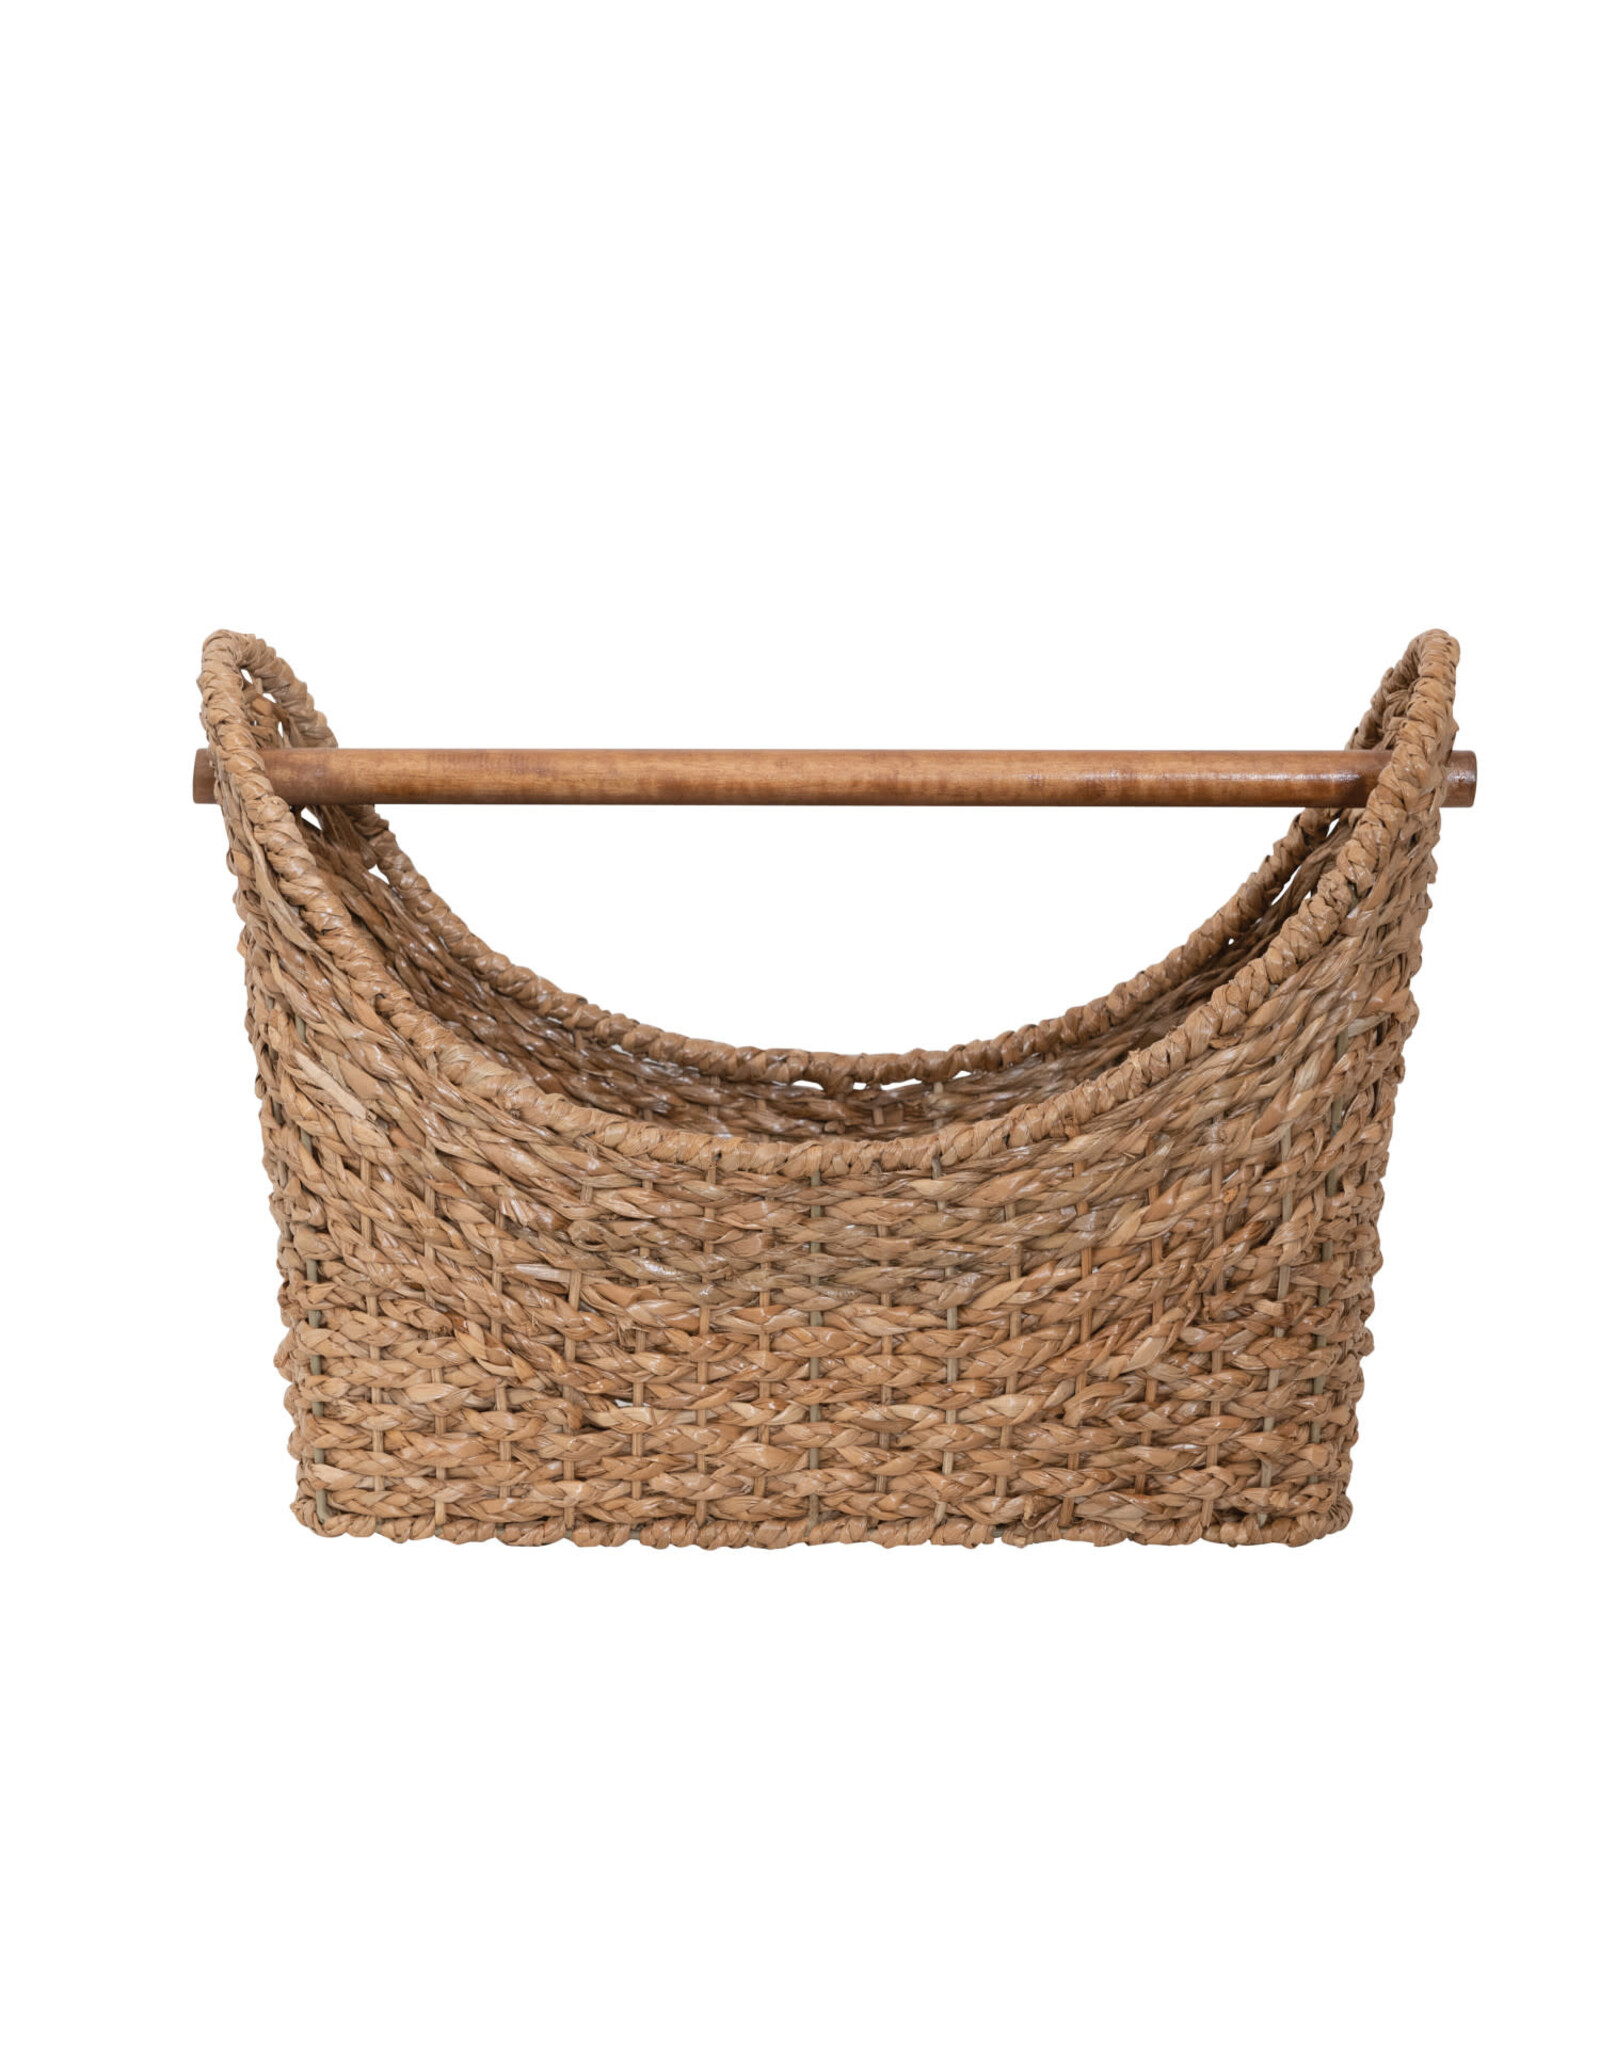 Oval Hand-Woven Bankuan Basket w/ Wood Handle DF6552